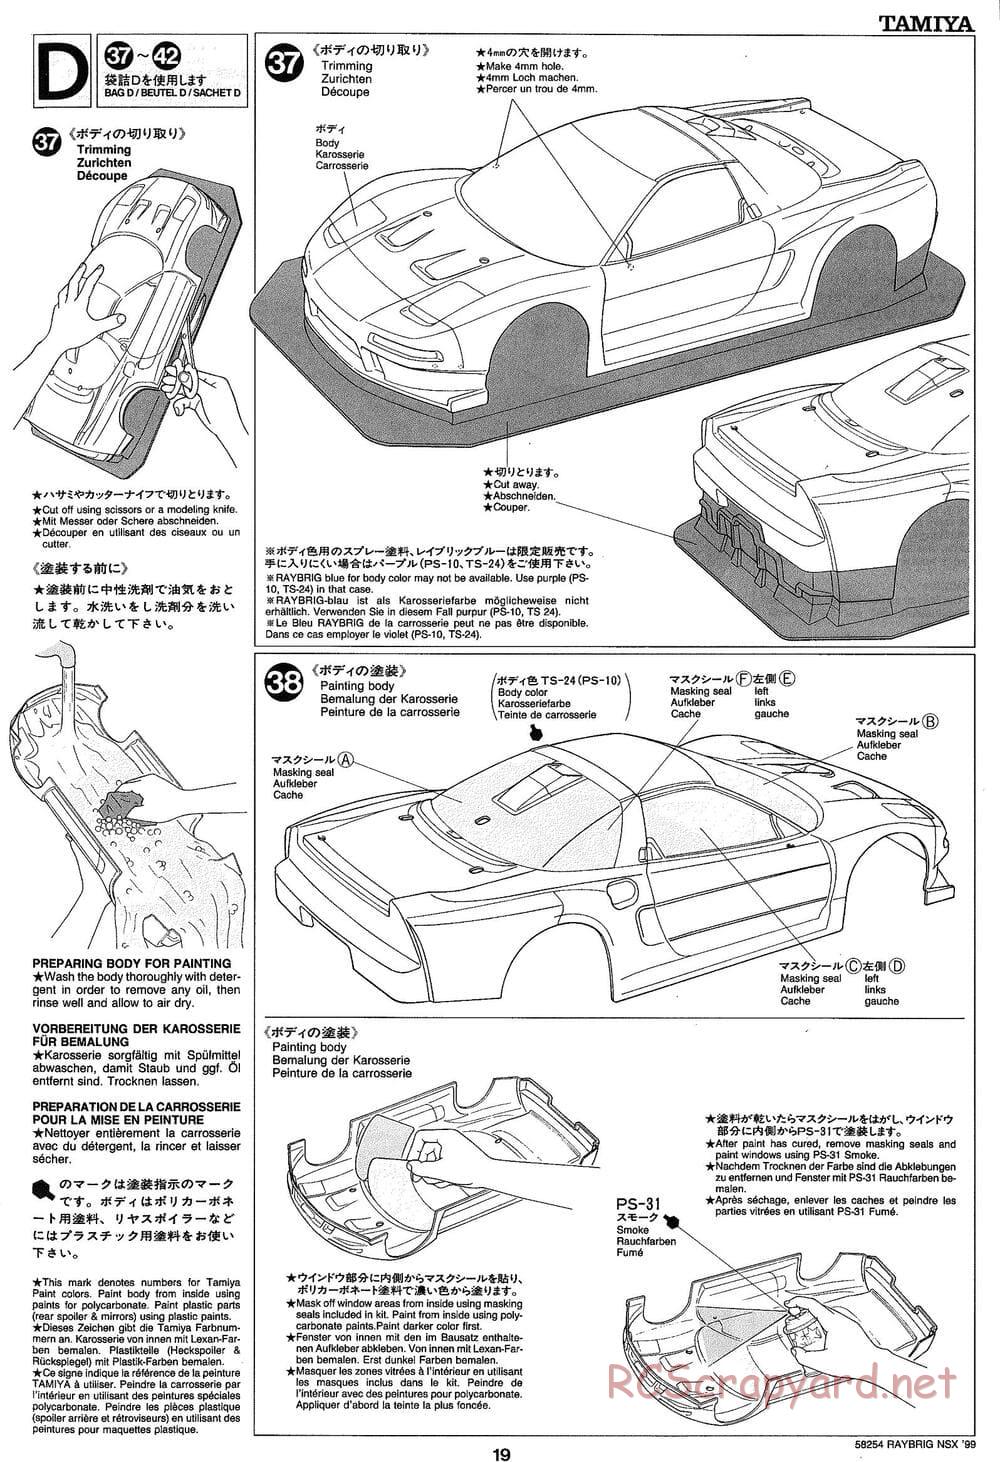 Tamiya - Raybrig NSX 99 - TA-03R Chassis - Manual - Page 19